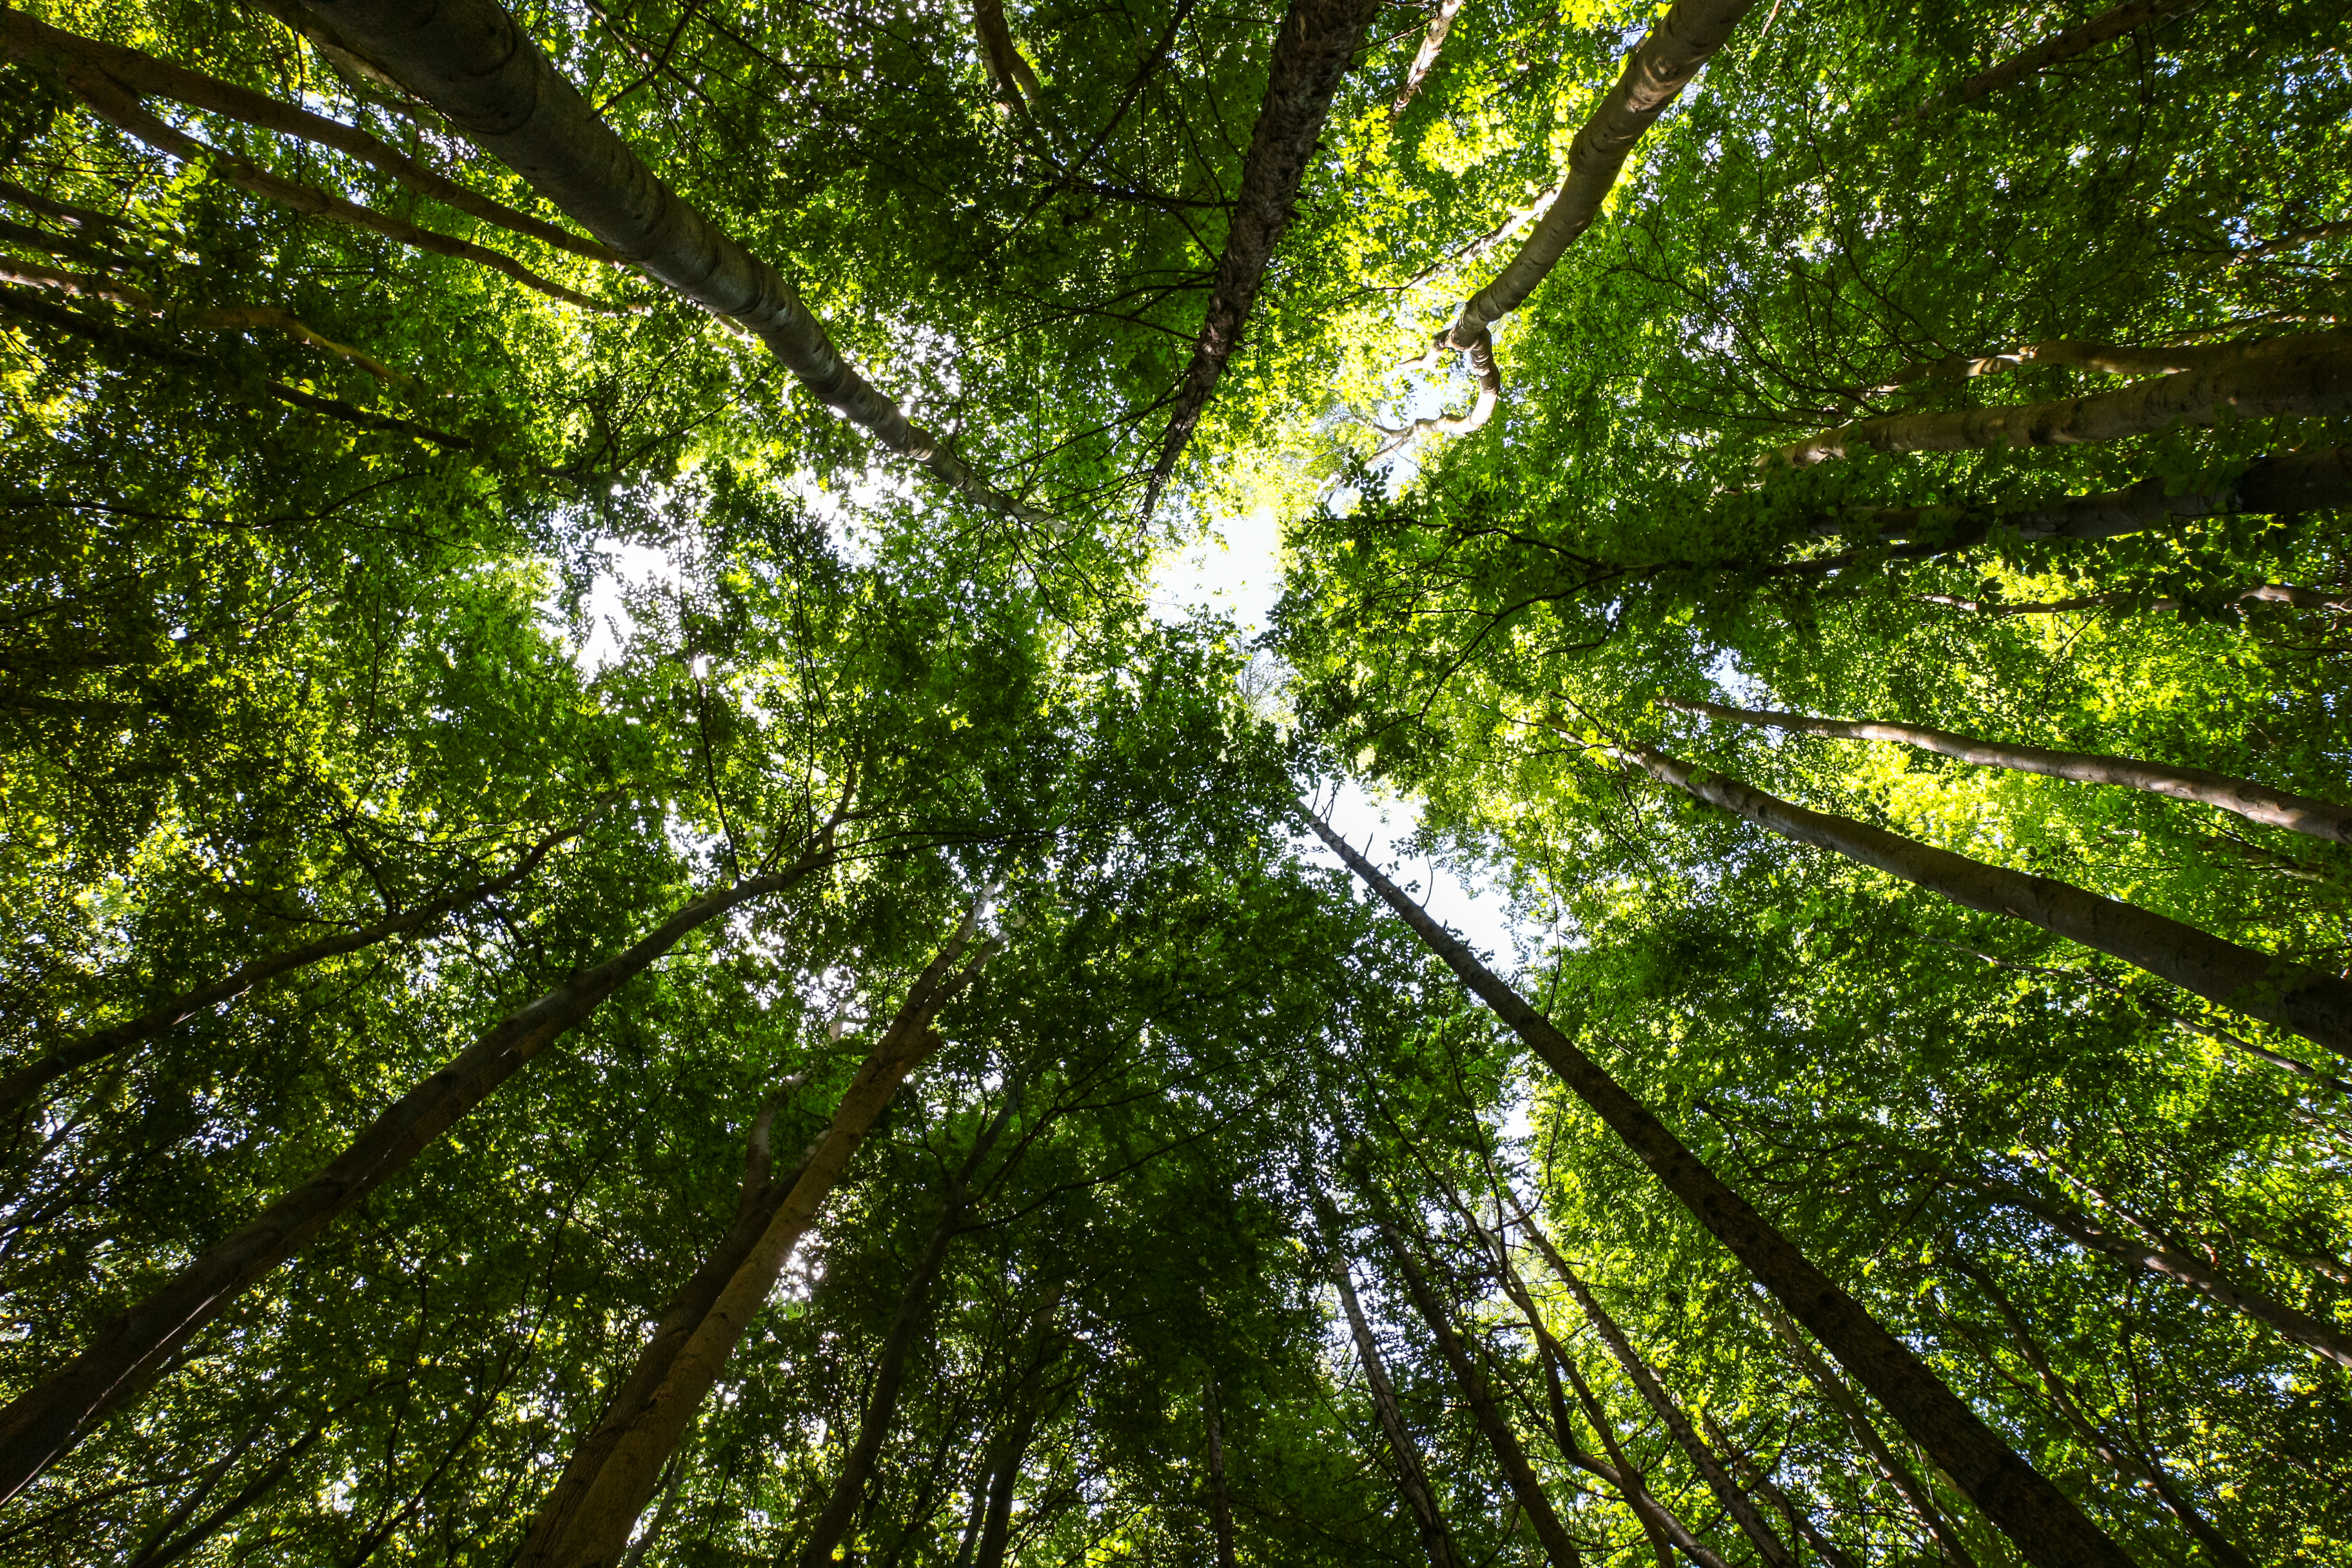 Īpašais ziņojums 21/2021: Eiropas Savienības finansējums biodaudzveidībai un klimata pārmaiņām ES mežos: pozitīvi, taču ierobežoti rezultāti